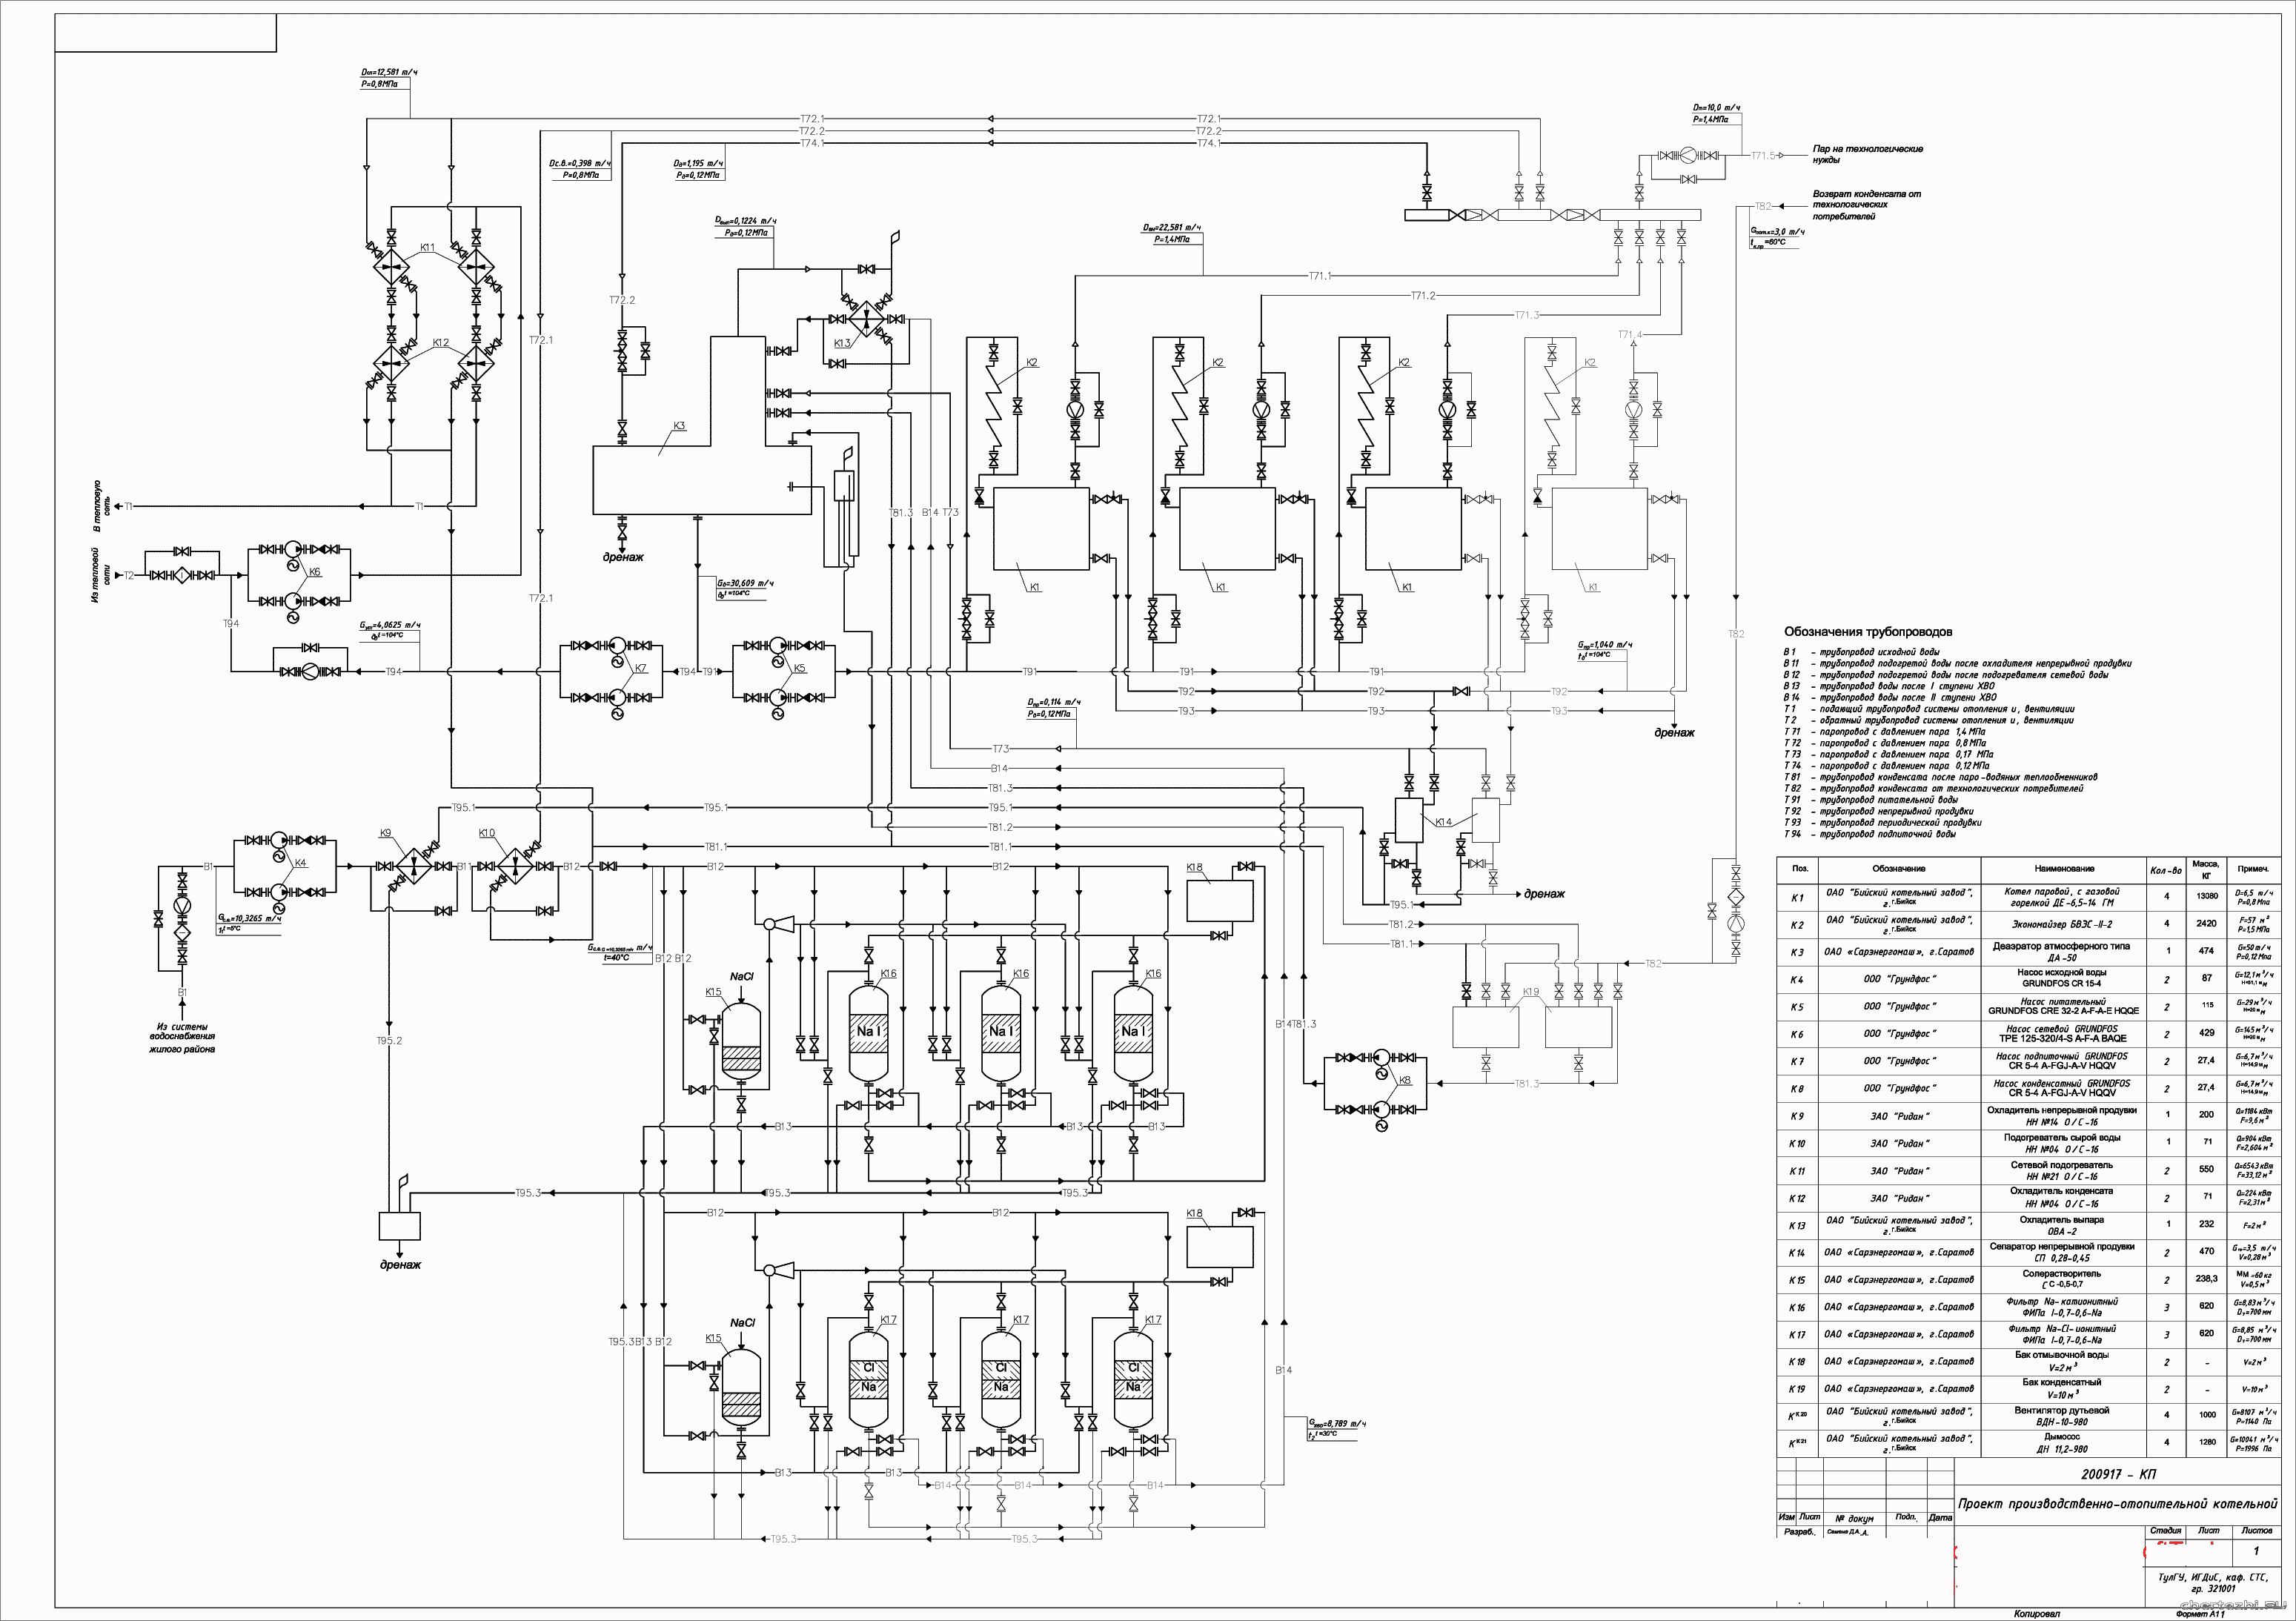 Курсовой проект - Расчет тепловой схемы производственно-отопительной котельной с котлом ДЕ6,5-14 ГМ